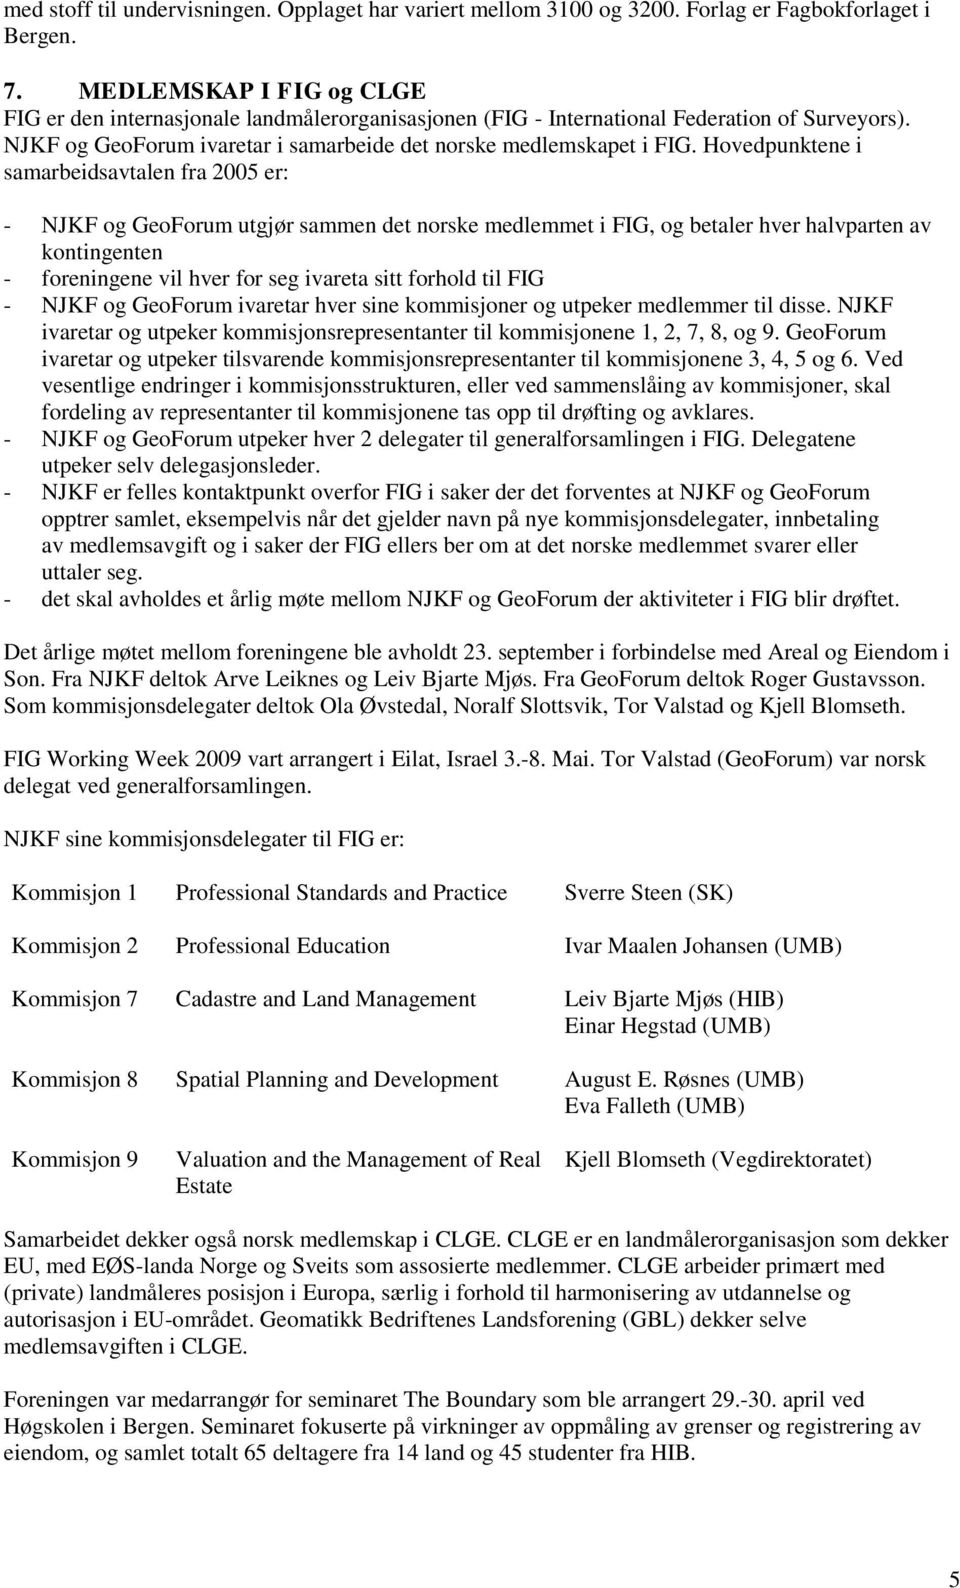 Hovedpunktene i samarbeidsavtalen fra 2005 er: - NJKF og GeoForum utgjør sammen det norske medlemmet i FIG, og betaler hver halvparten av kontingenten - foreningene vil hver for seg ivareta sitt